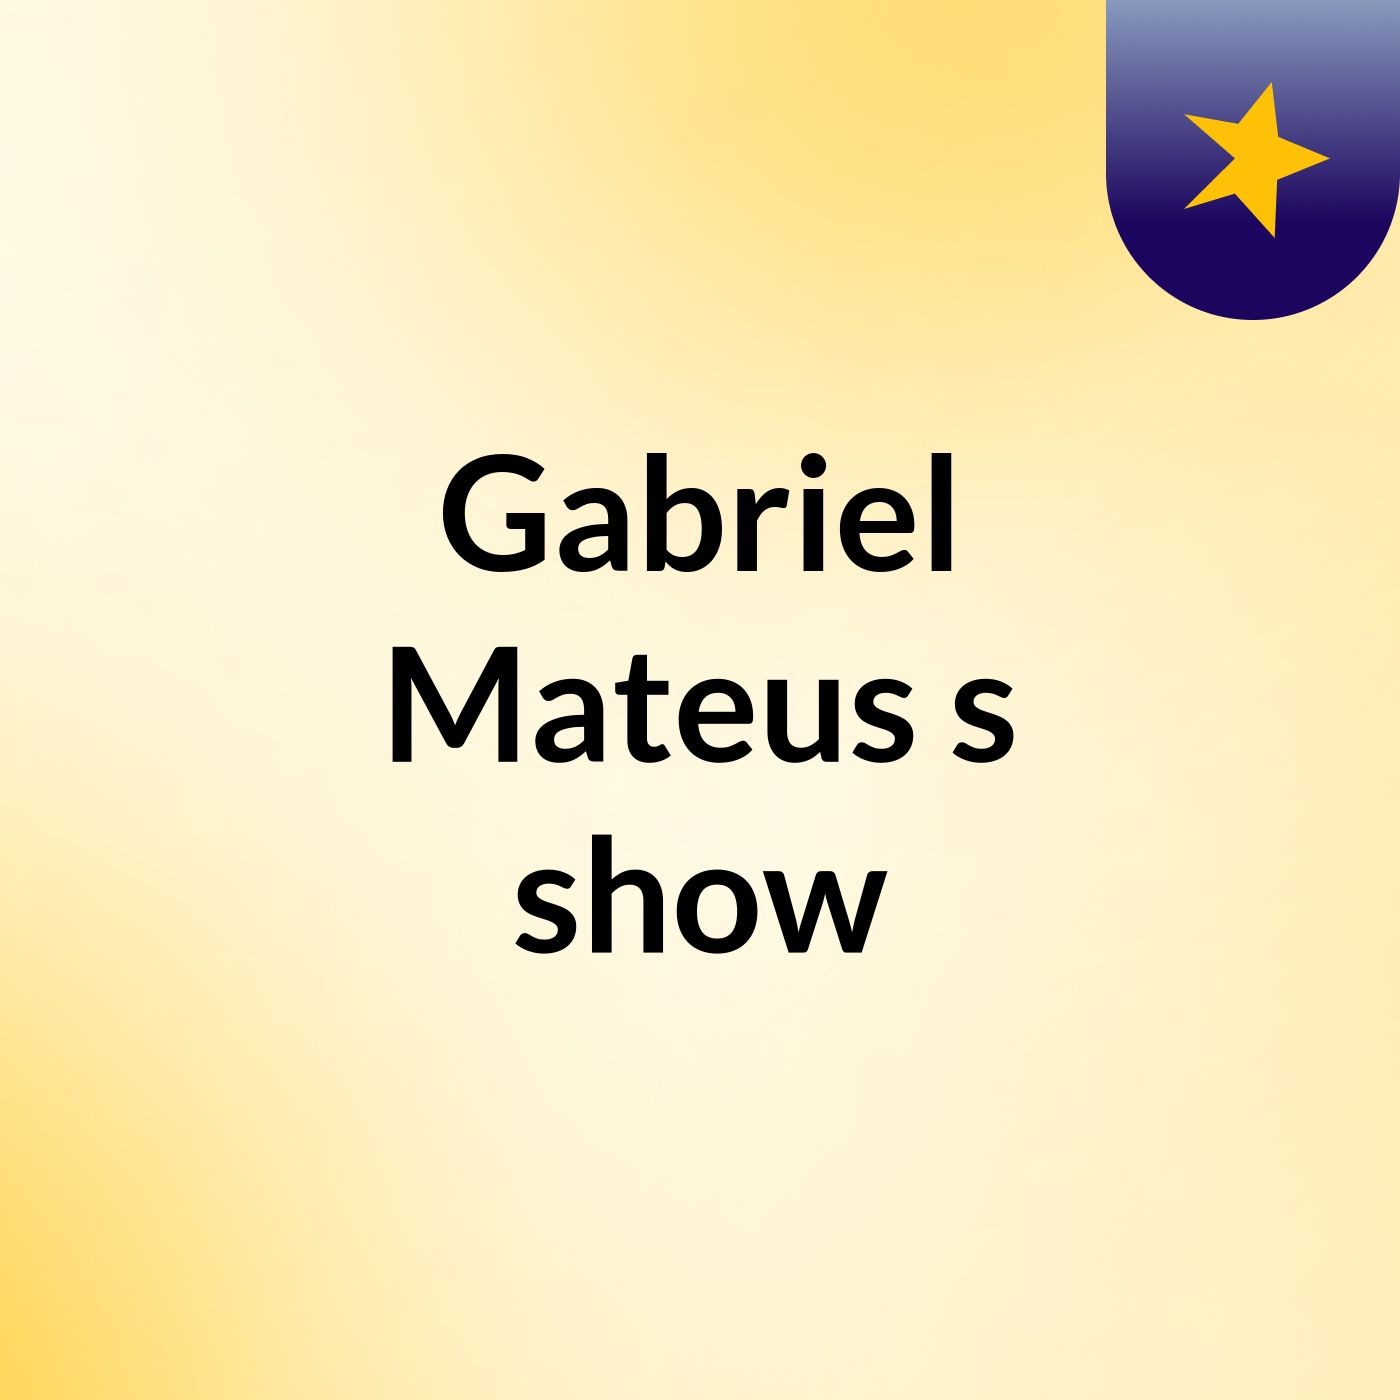 Gabriel Mateus's show